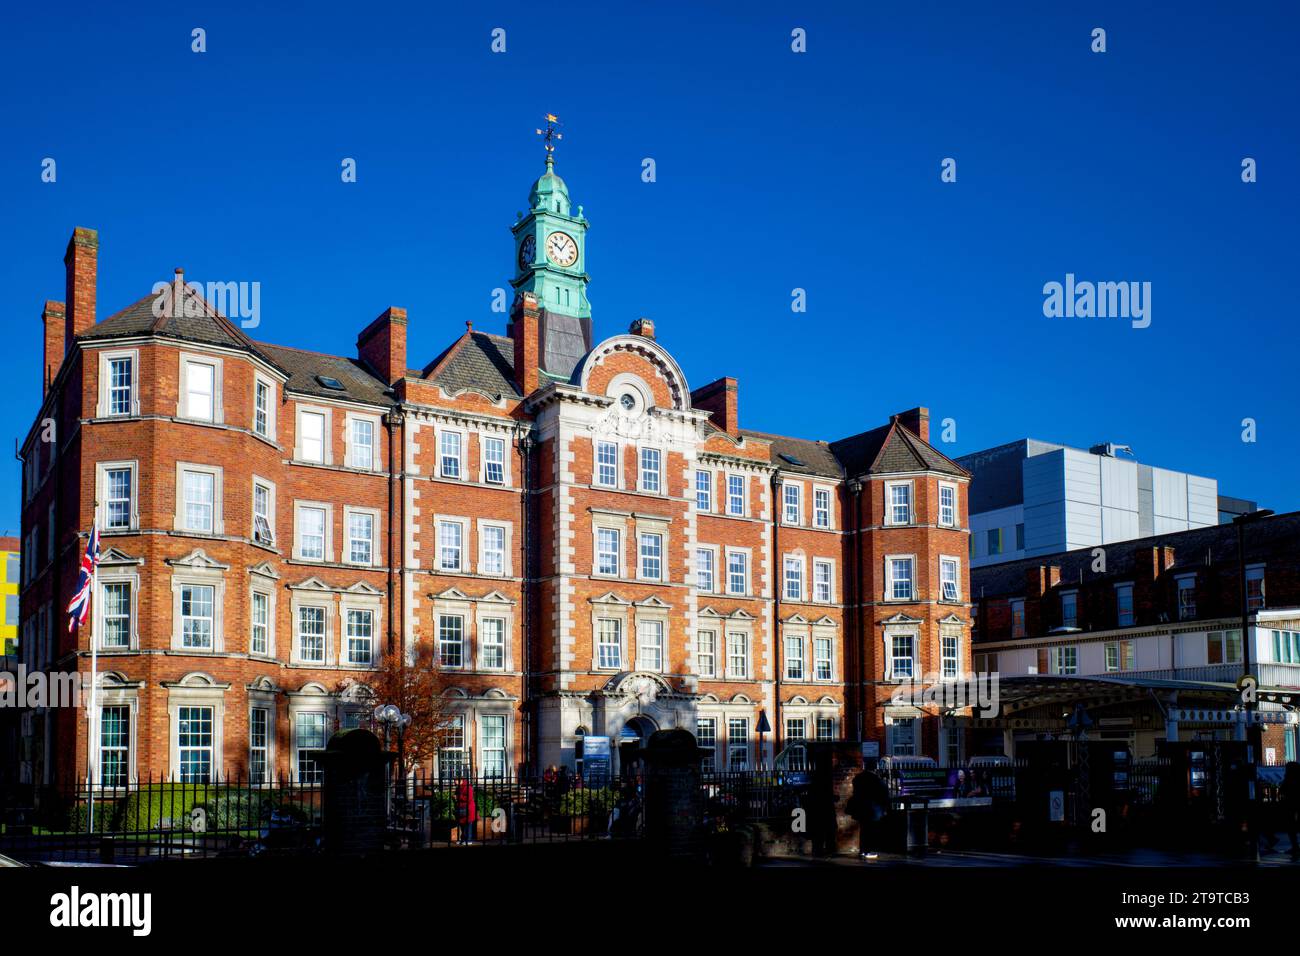 Hammersmith Hospital, Du Cane Road, Borough of Hammersmith & Fulham, London, England, UK Stock Photo